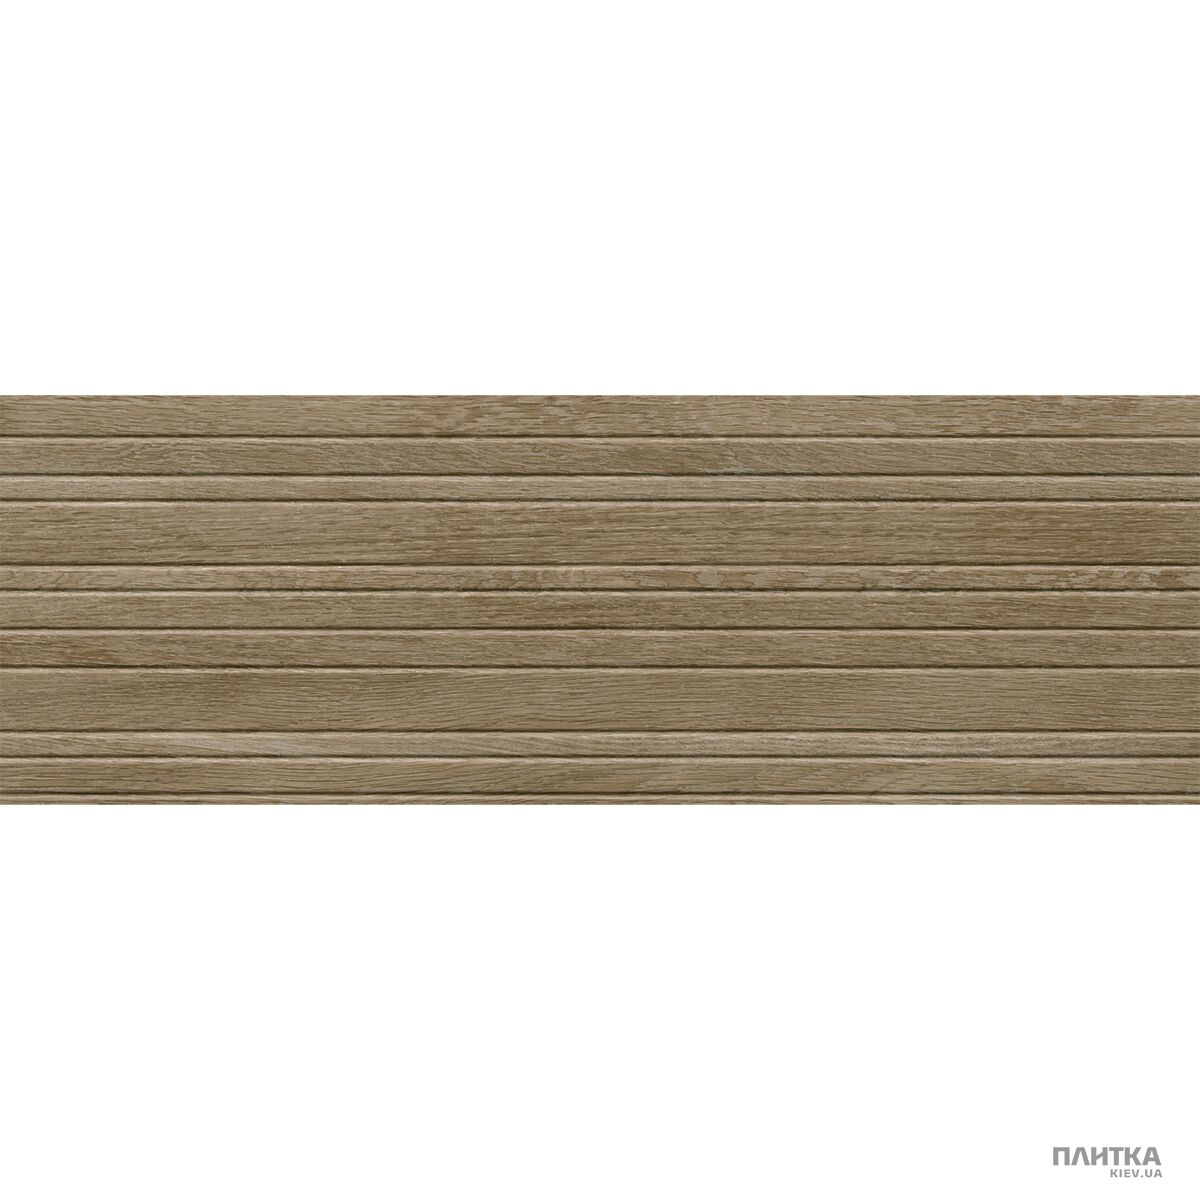 Плитка Azteca Woodlife WOODLIFE R90 GAP CLASSIC коричневый